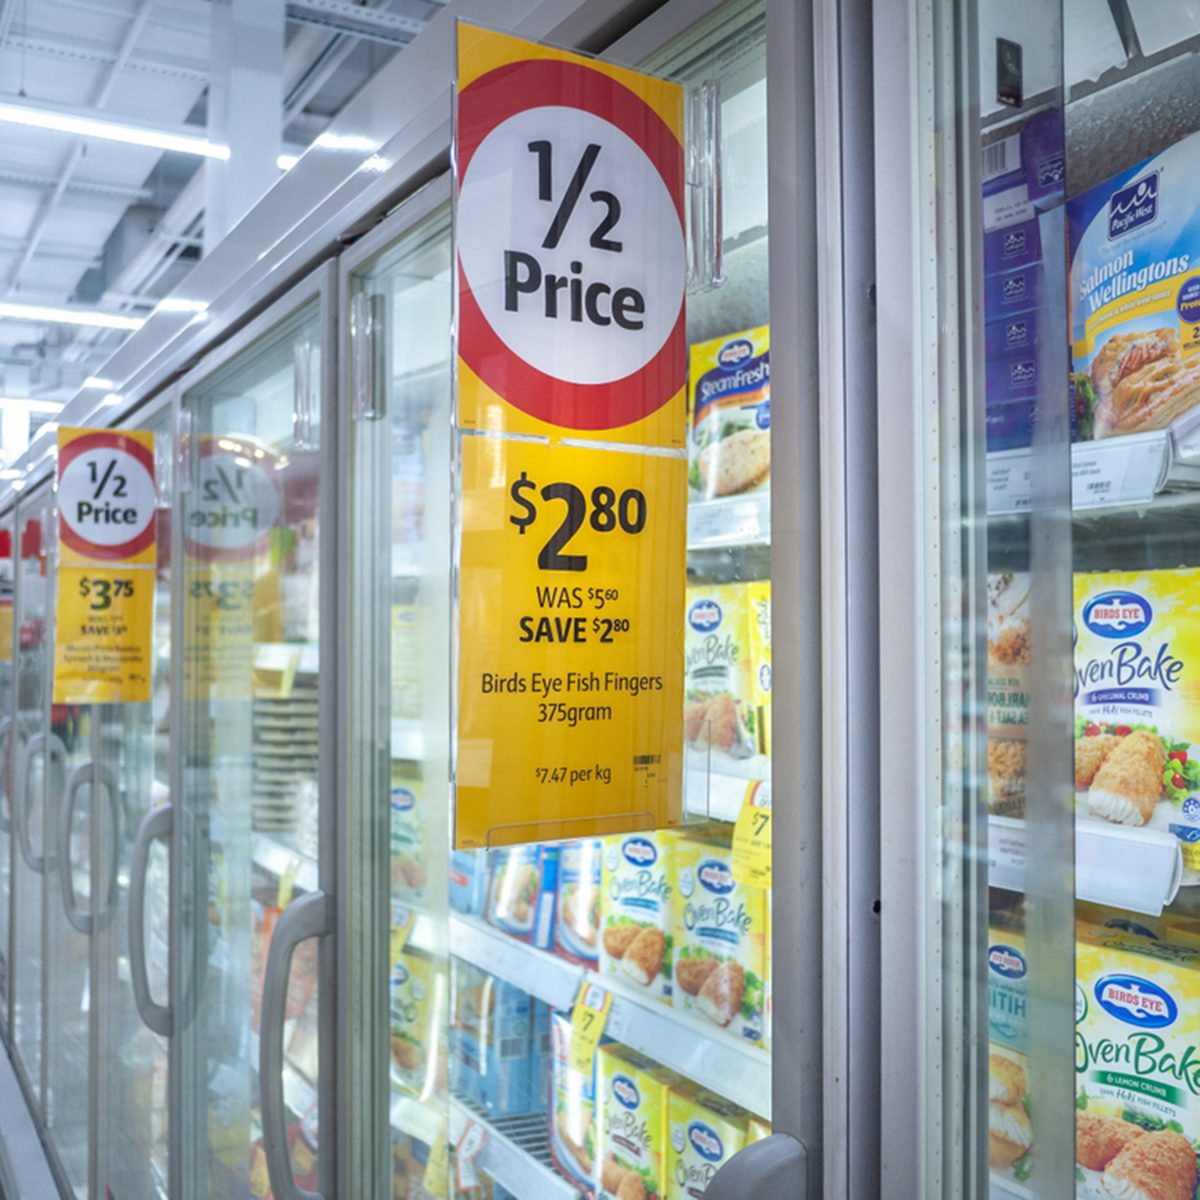 折扣价格标签在高斯超市冷冻食品的内阁